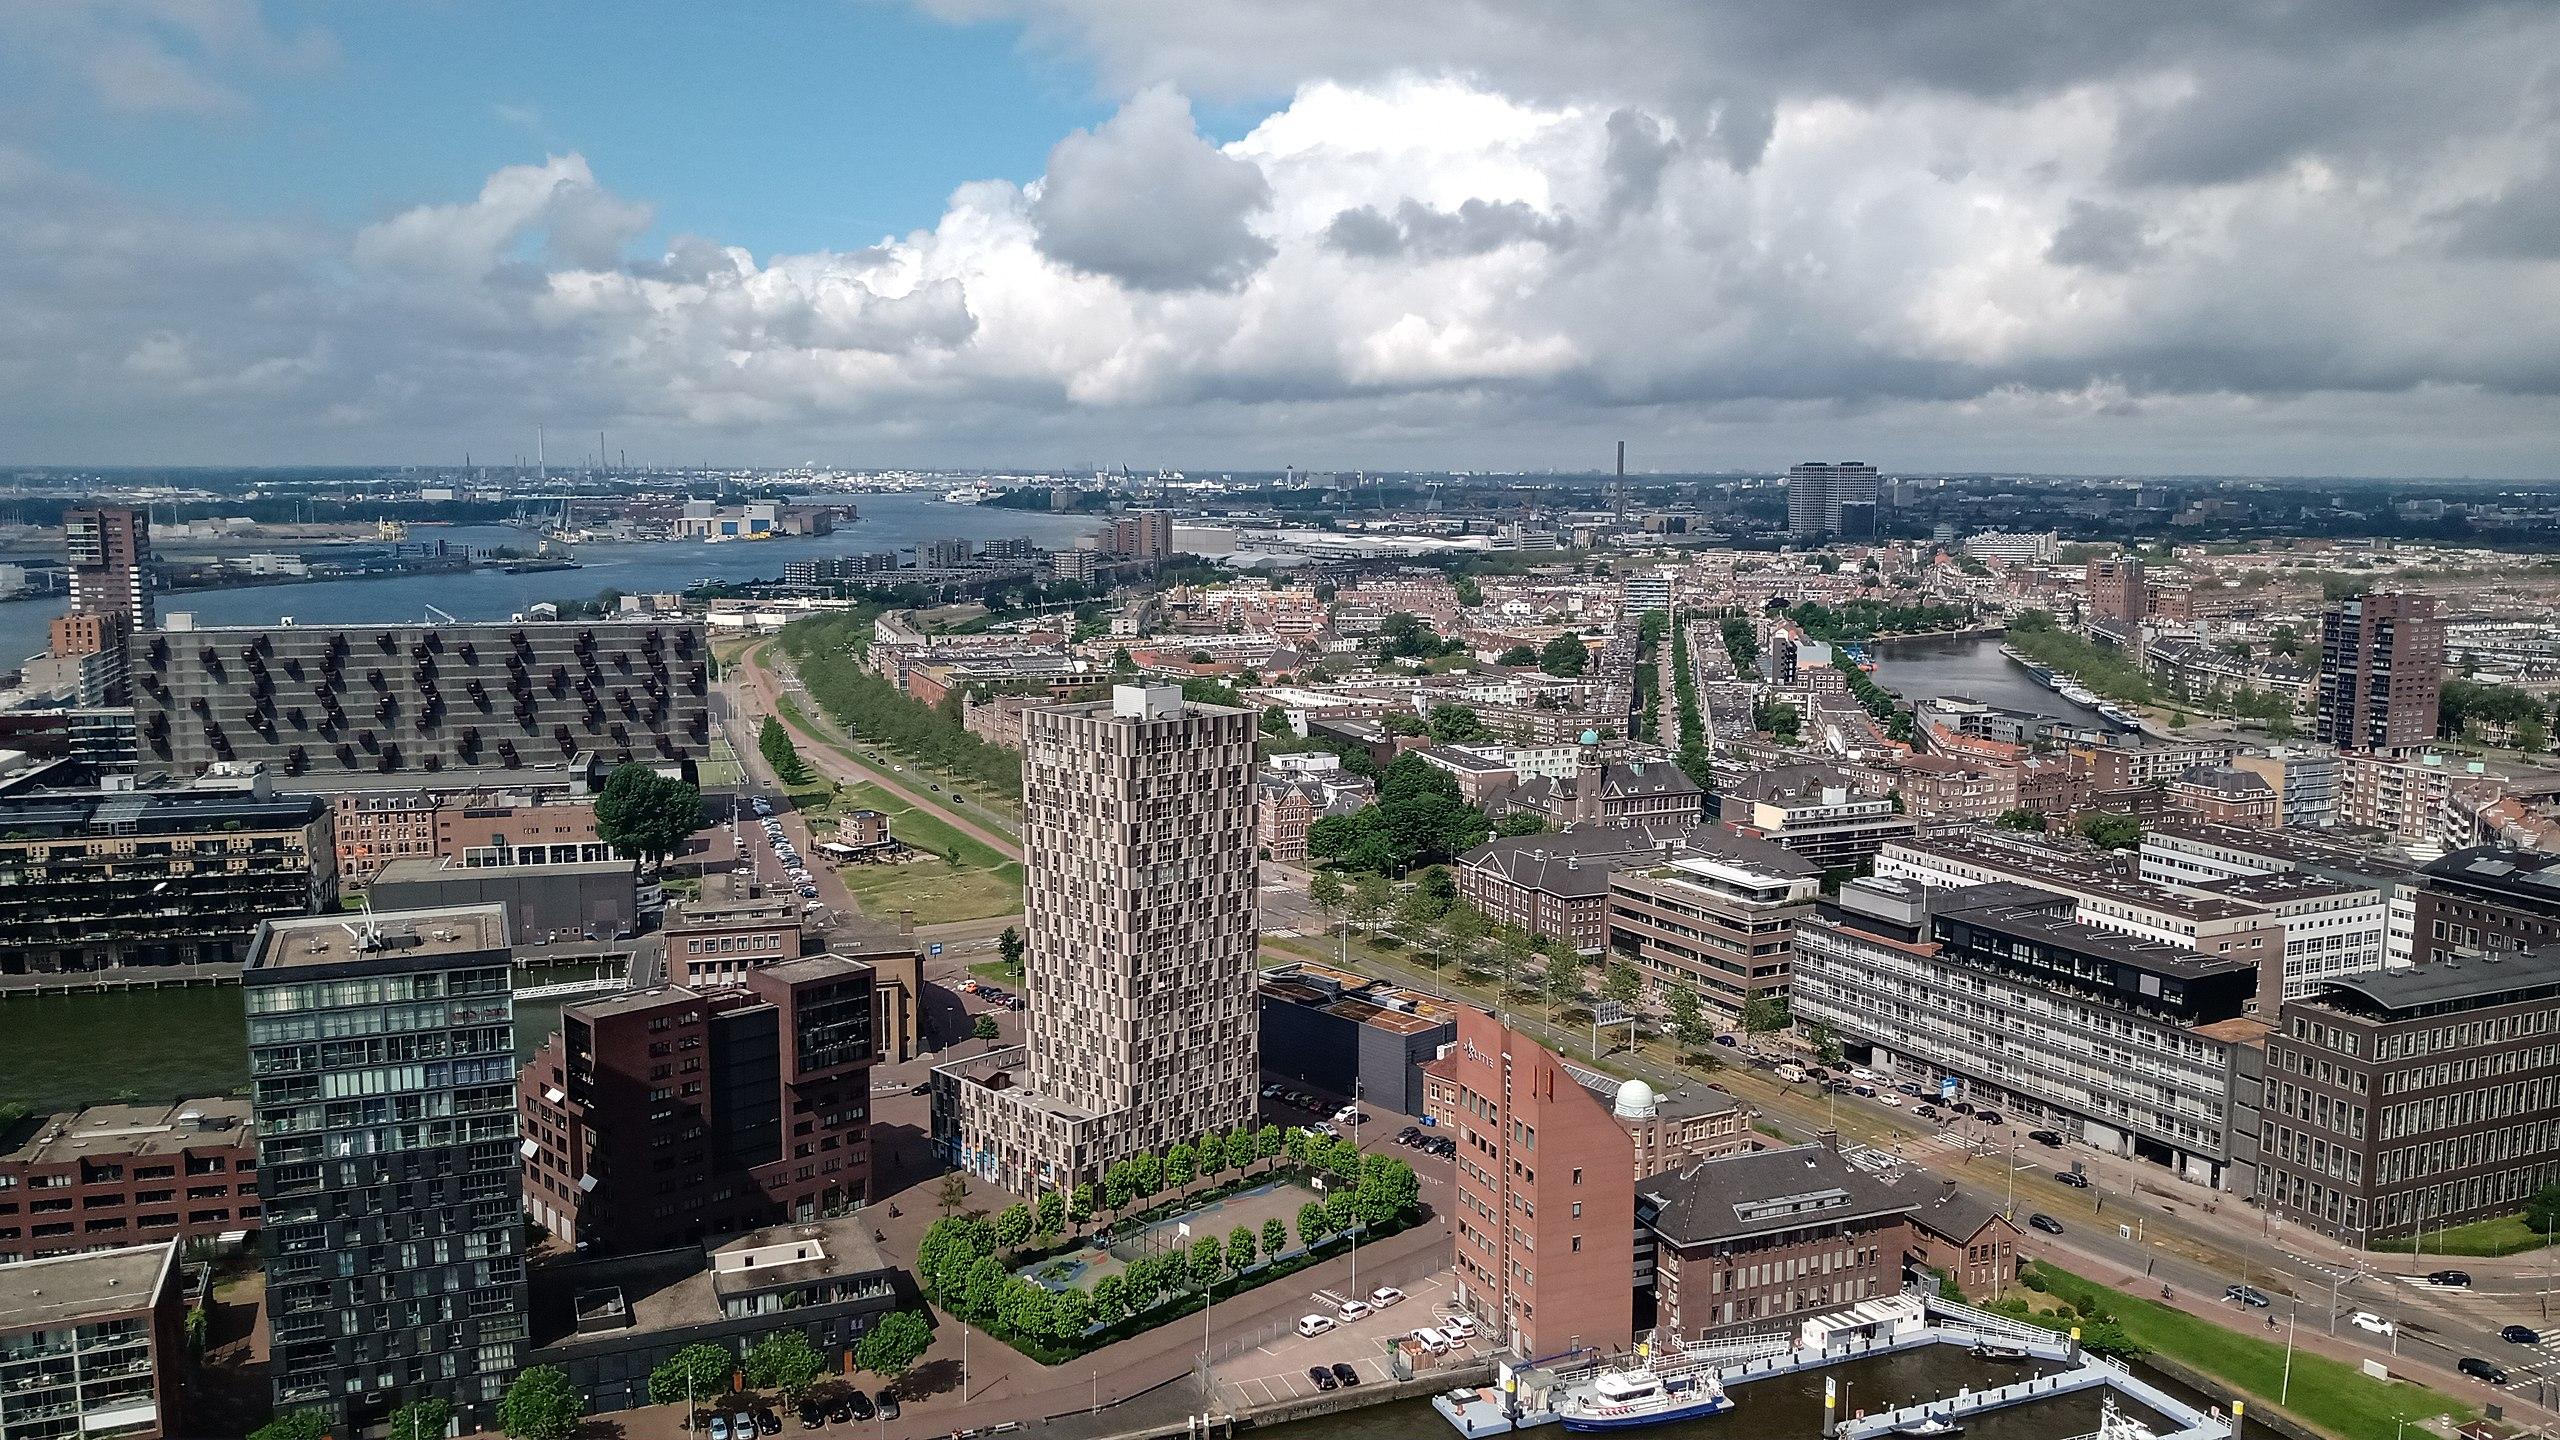 Θέα του Ροτερνταμ από τον πύργο Euromast 0